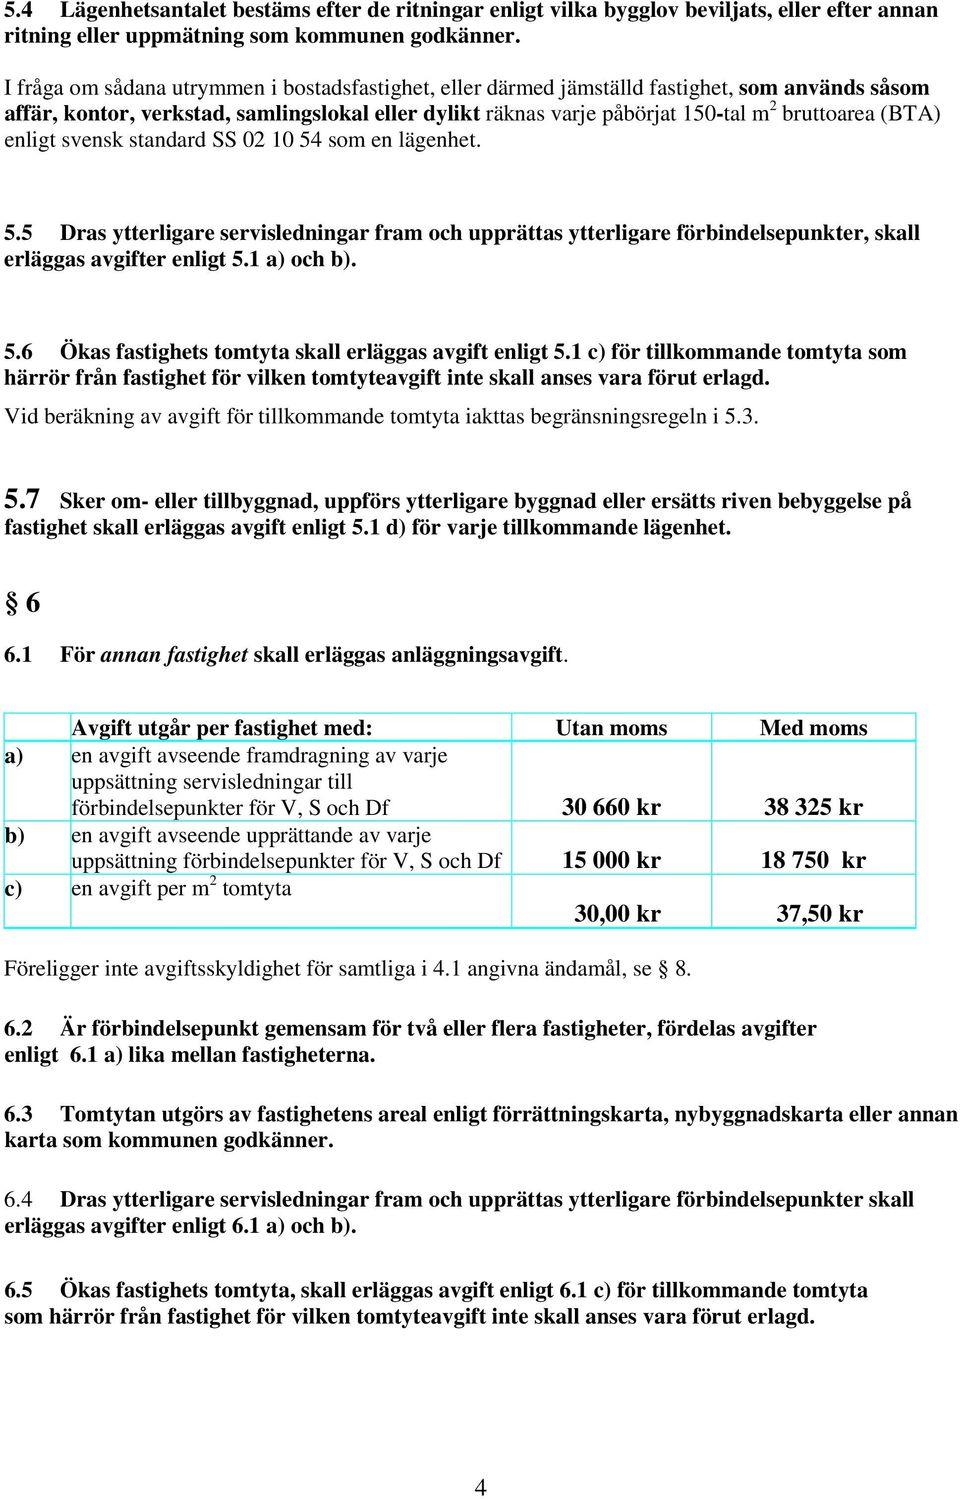 (BTA) enligt svensk standard SS 02 10 54 som en lägenhet. 5.5 Dras ytterligare servisledningar fram och upprättas ytterligare förbindelsepunkter, skall erläggas avgifter enligt 5.1 a) och b). 5.6 Ökas fastighets tomtyta skall erläggas avgift enligt 5.